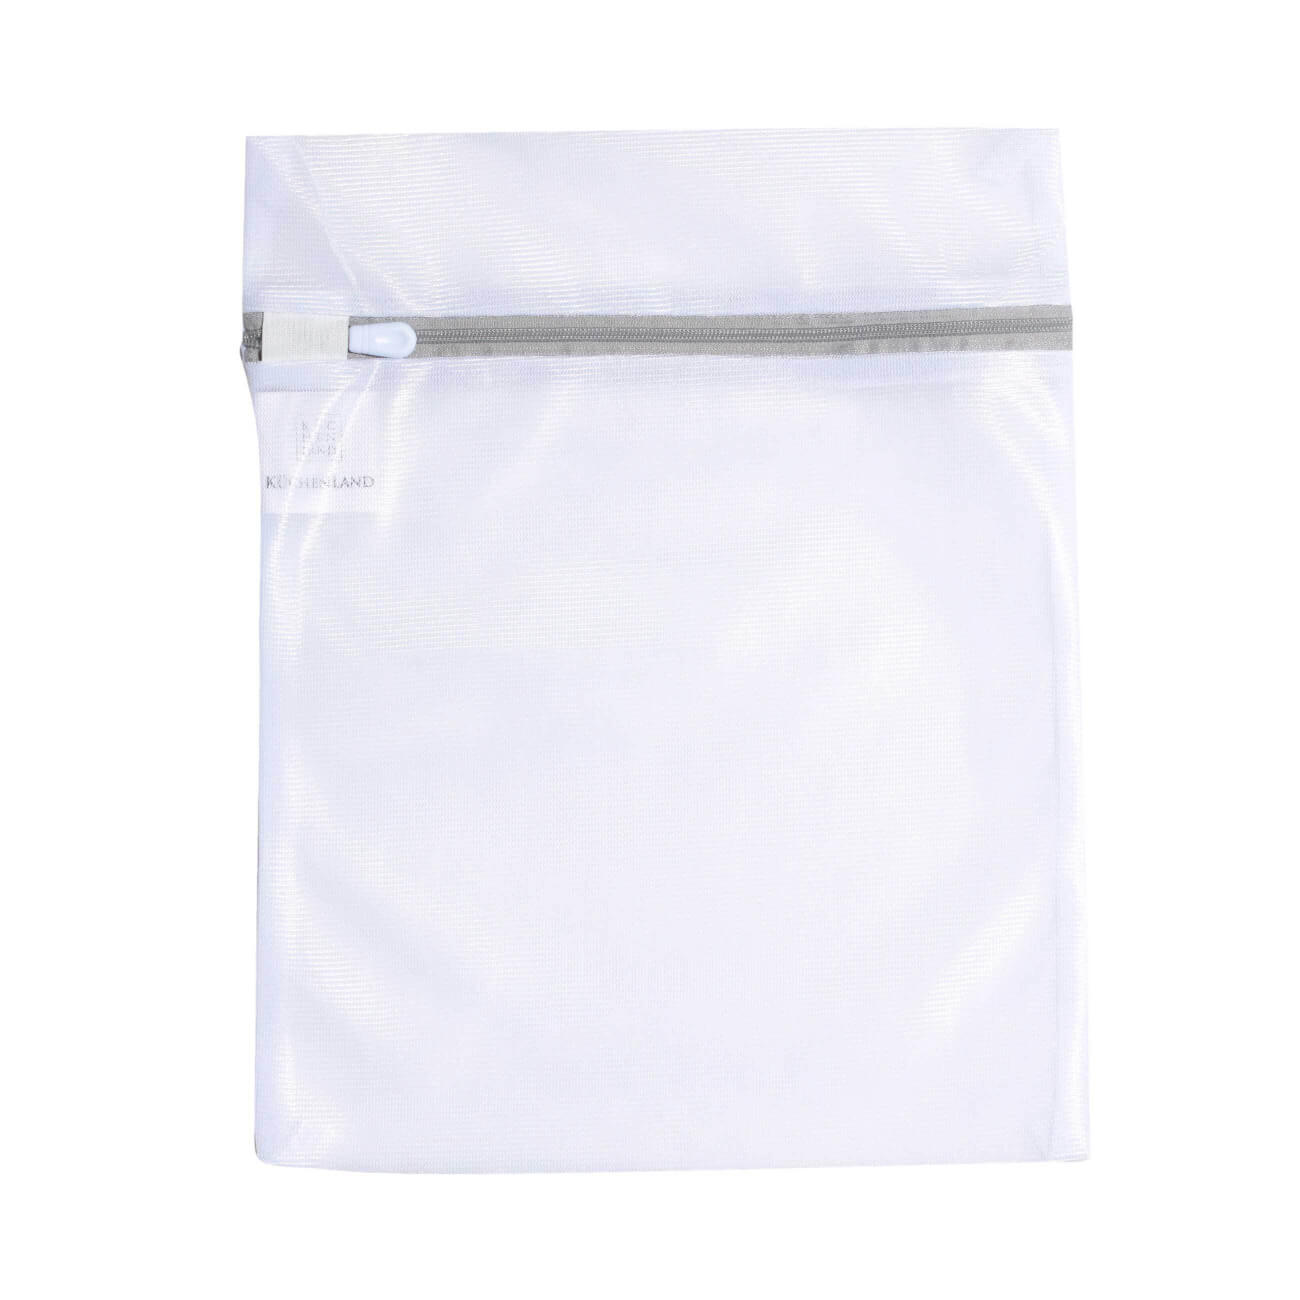 Мешок для стирки нижнего белья, 25х30 см, полиэстер, бело-серый, Safety plus мешок для стирки нижнего белья 38 см полиэстер safety plus